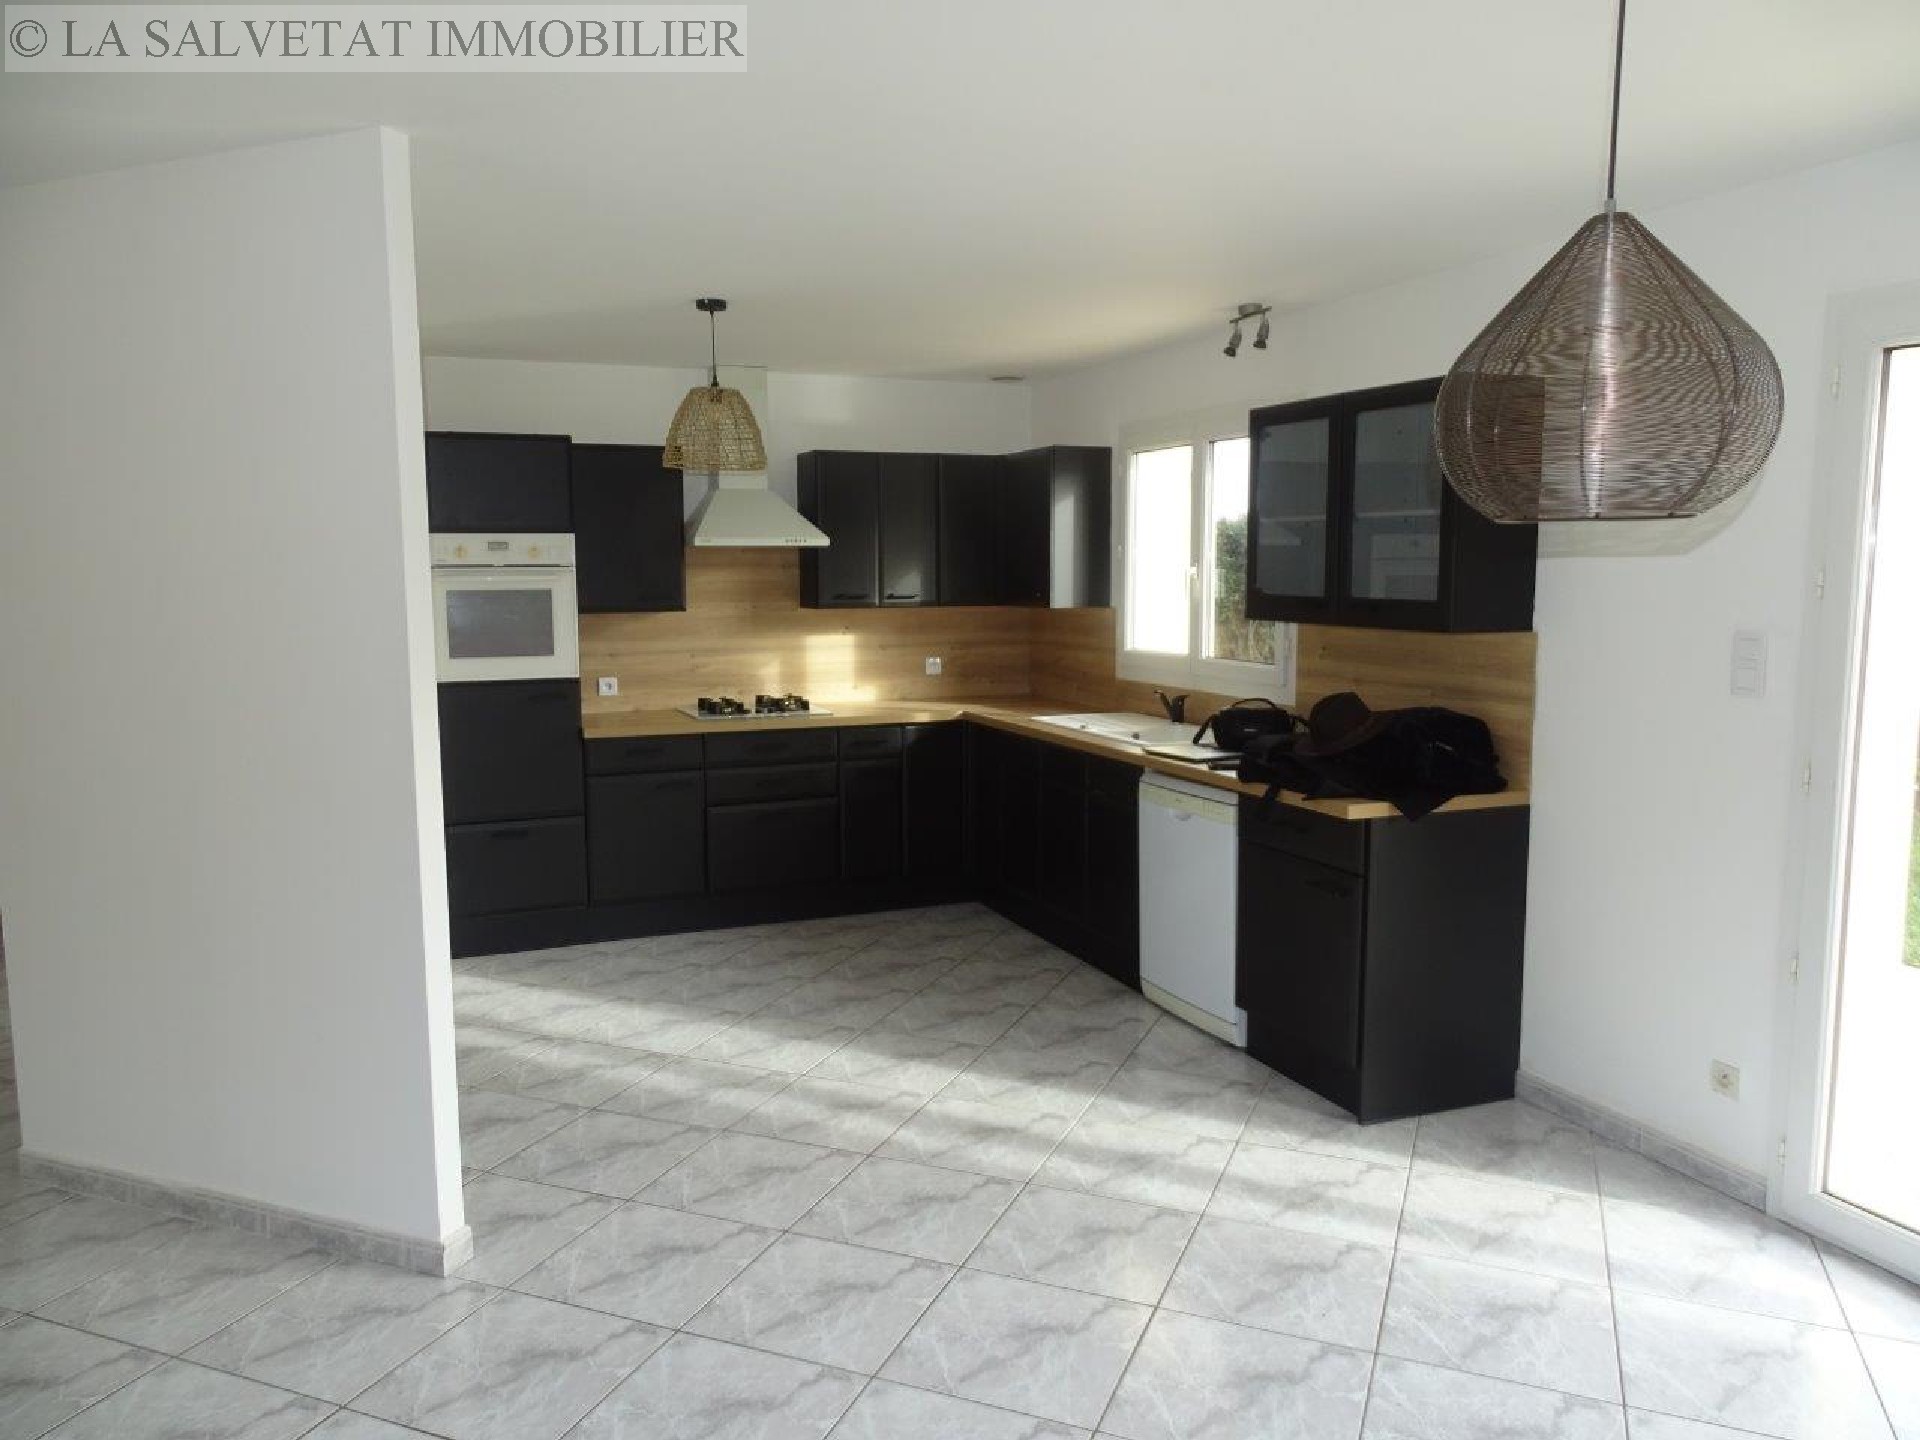 Vente maison-villa - CORNEBARRIEU<br>117 m², 5 pièces